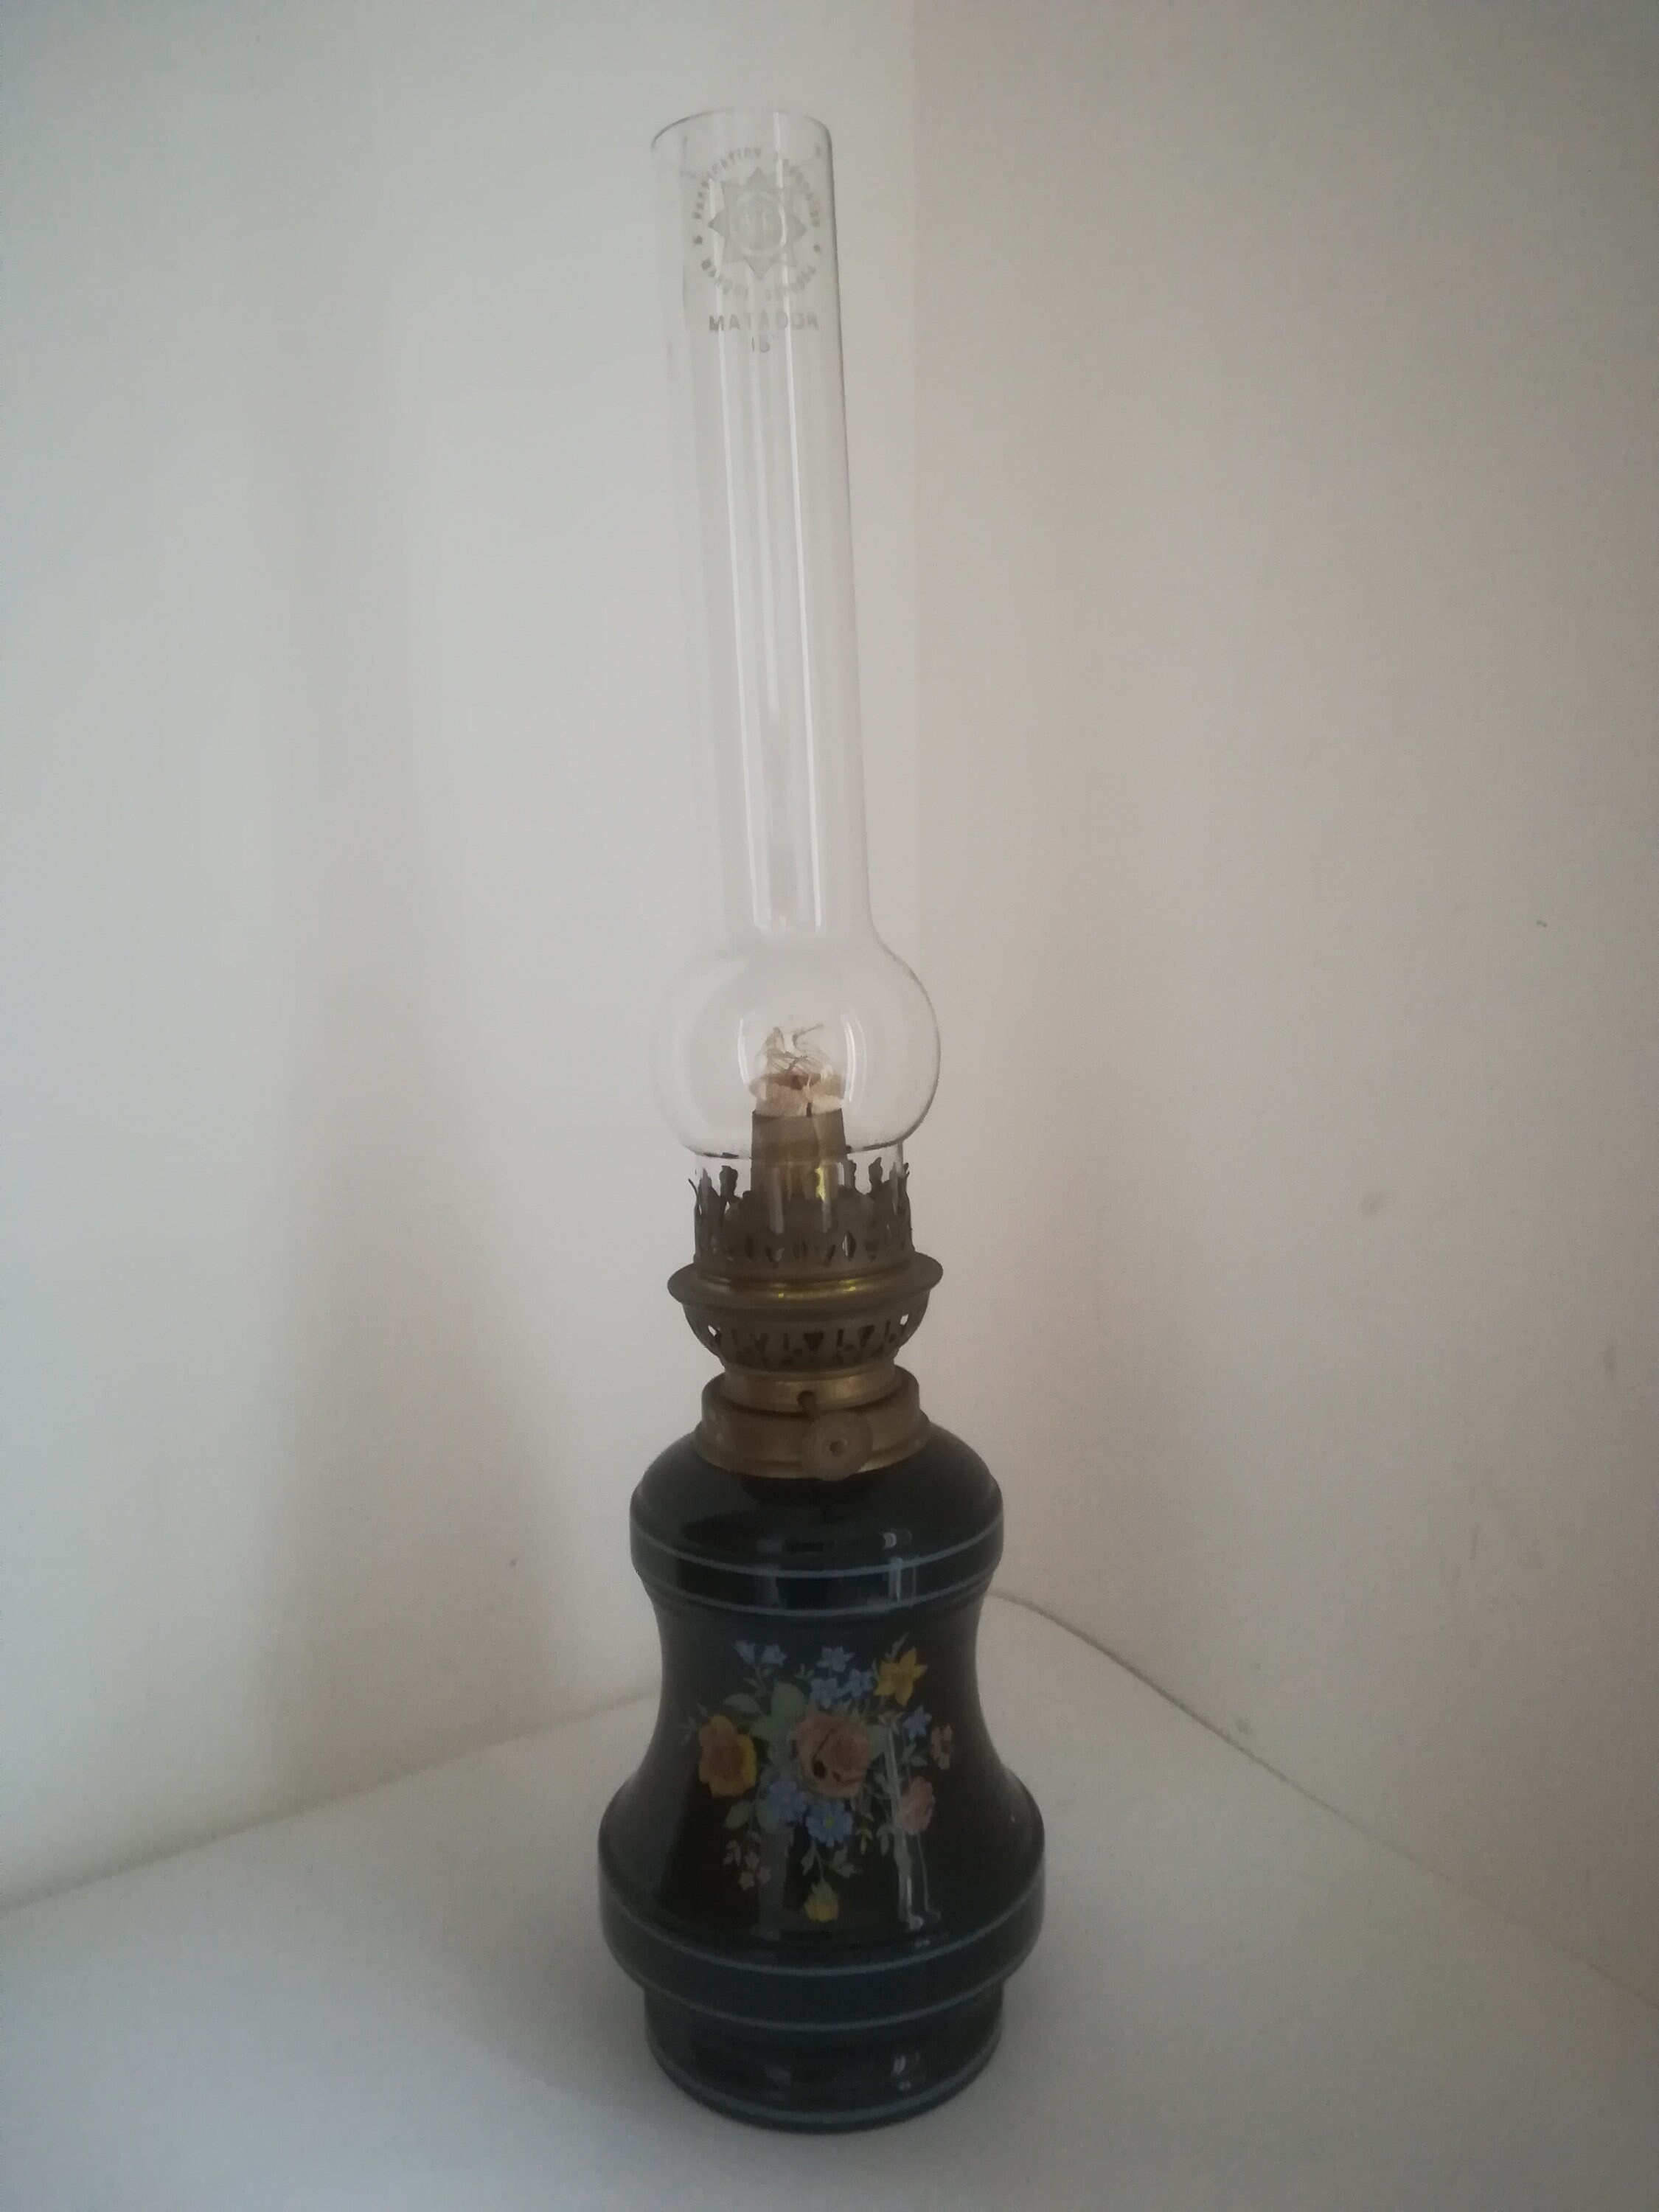 Vintage Lampe à Pétrole Française Jamais Servie, avec Une Mêche Neuve/ Vintage French Oil Lamp Never